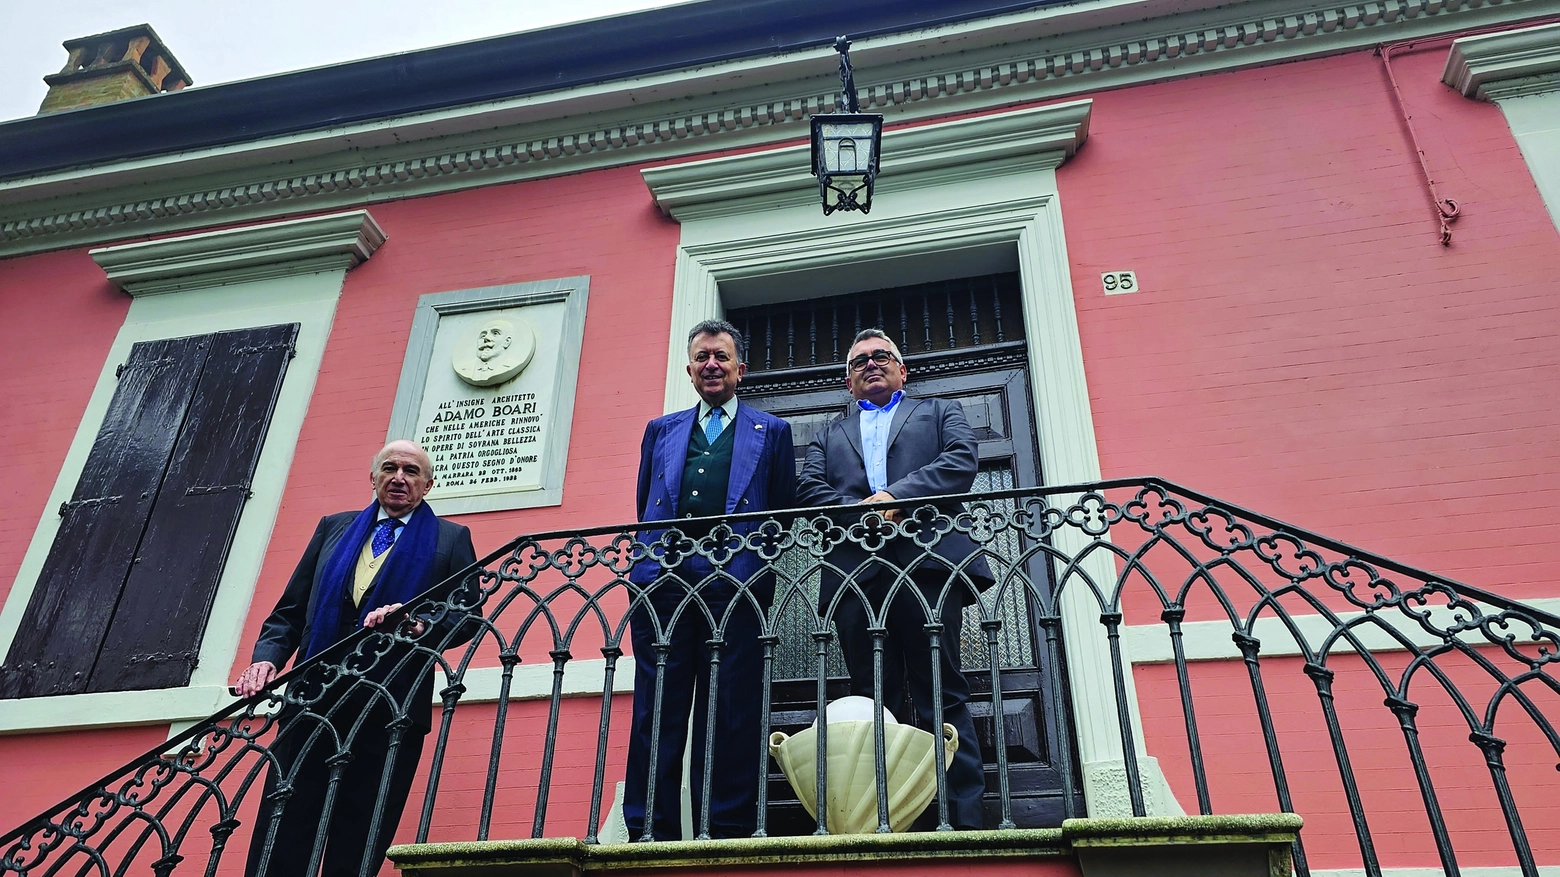 Carlos Eugenio Garcia de Alba Zepeda e José Luis Martìnez y Hernandez